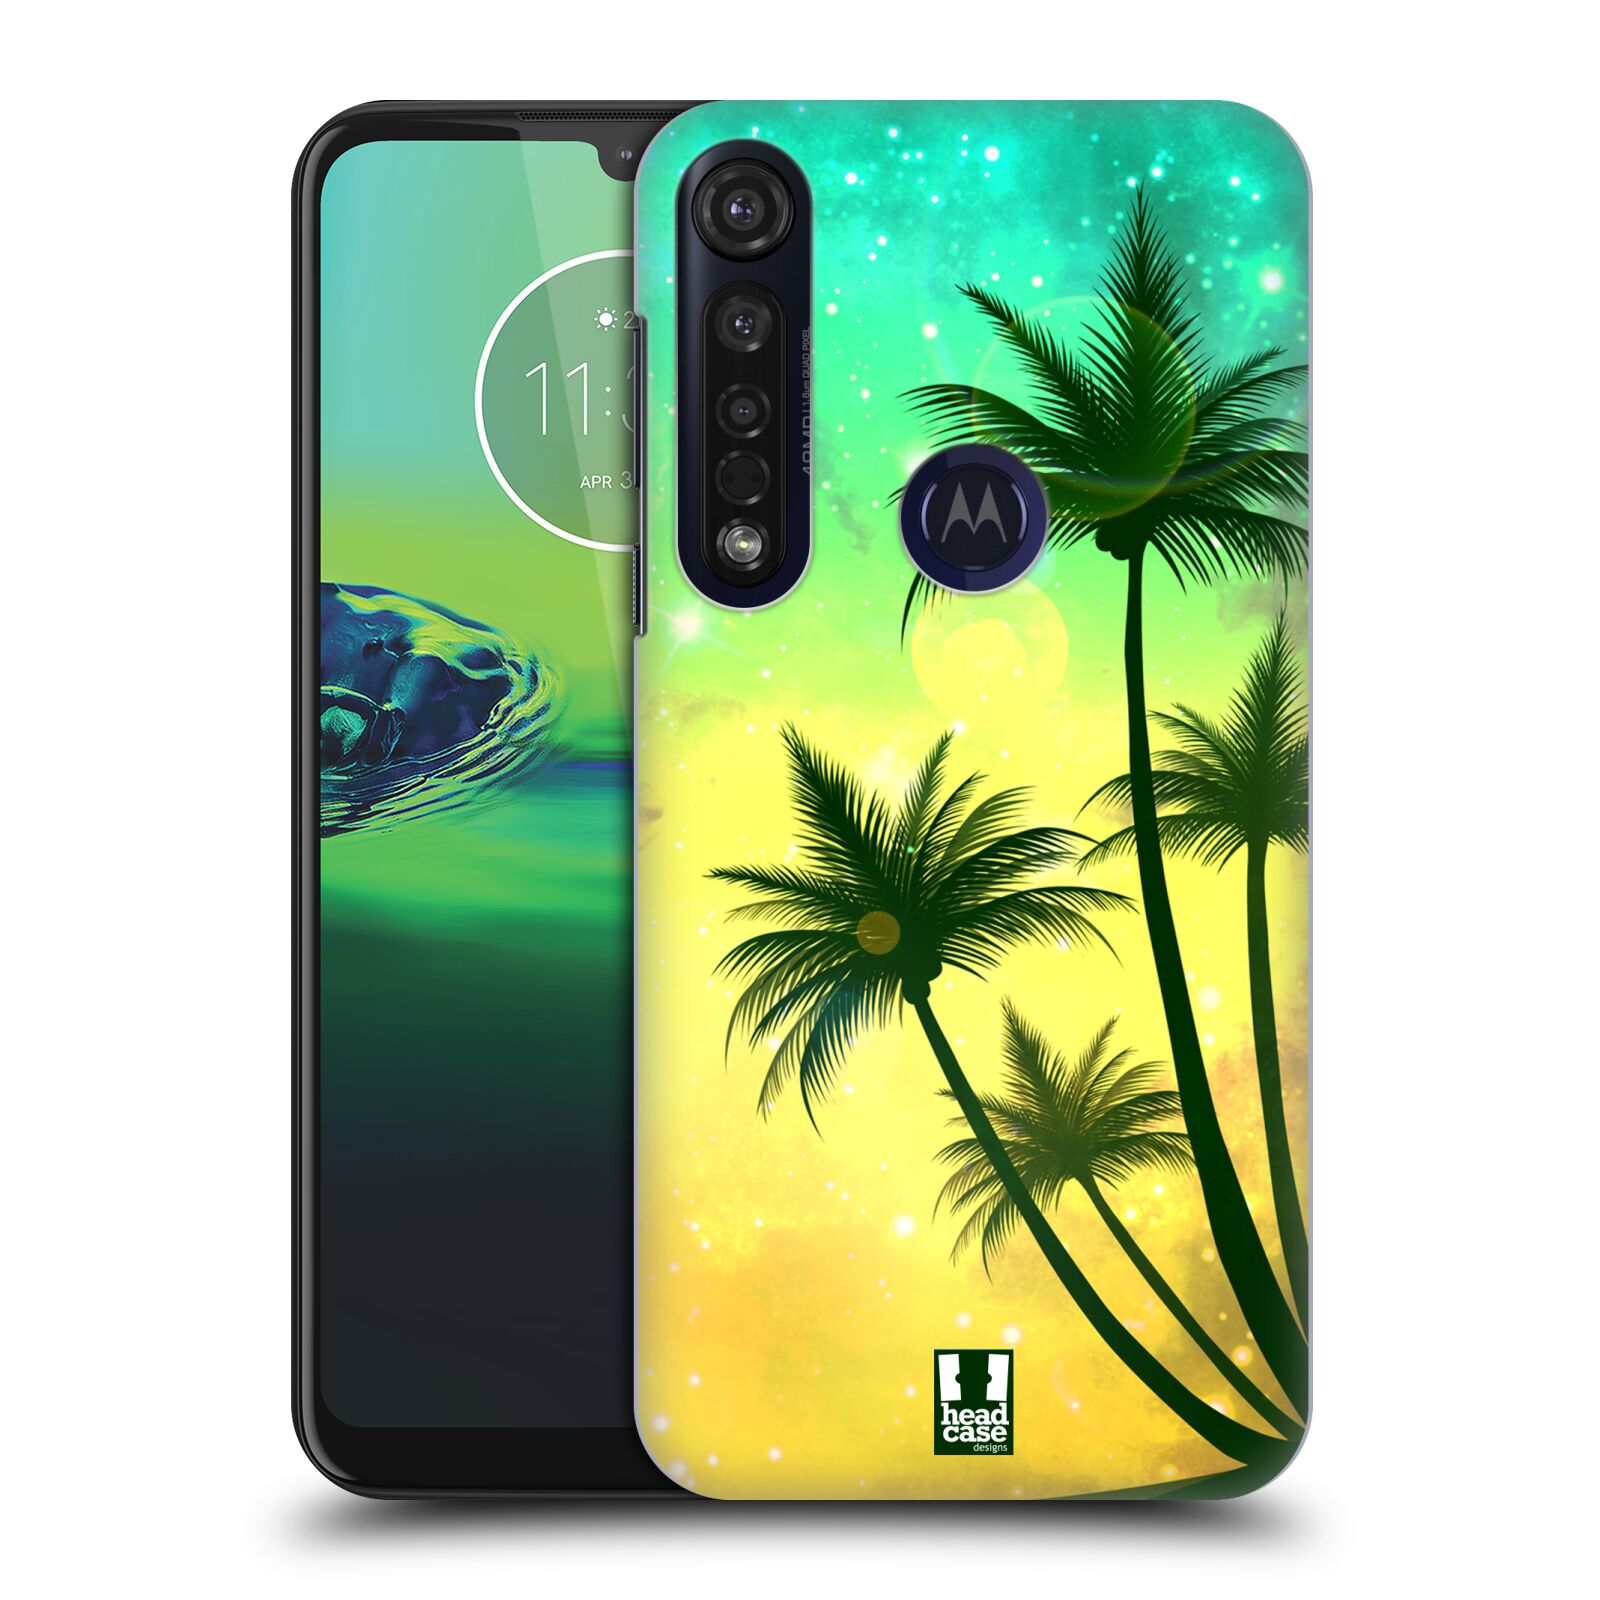 Pouzdro na mobil Motorola Moto G8 PLUS - HEAD CASE - vzor Kreslený motiv silueta moře a palmy TYRKYSOVÁ